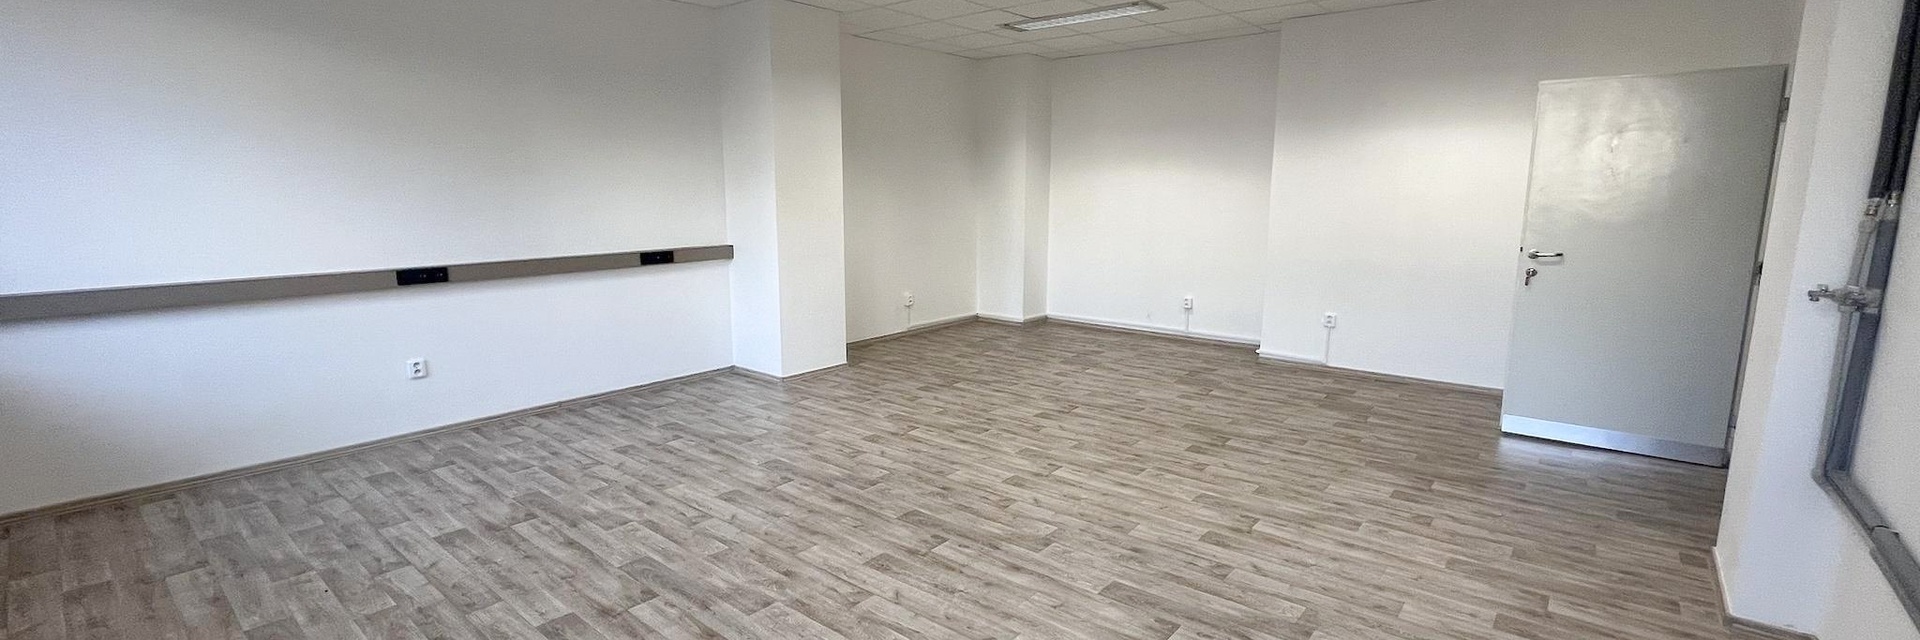 Pronájem klimatizované kanceláře 51 m², v centru Brna, ul. Milady Horákové